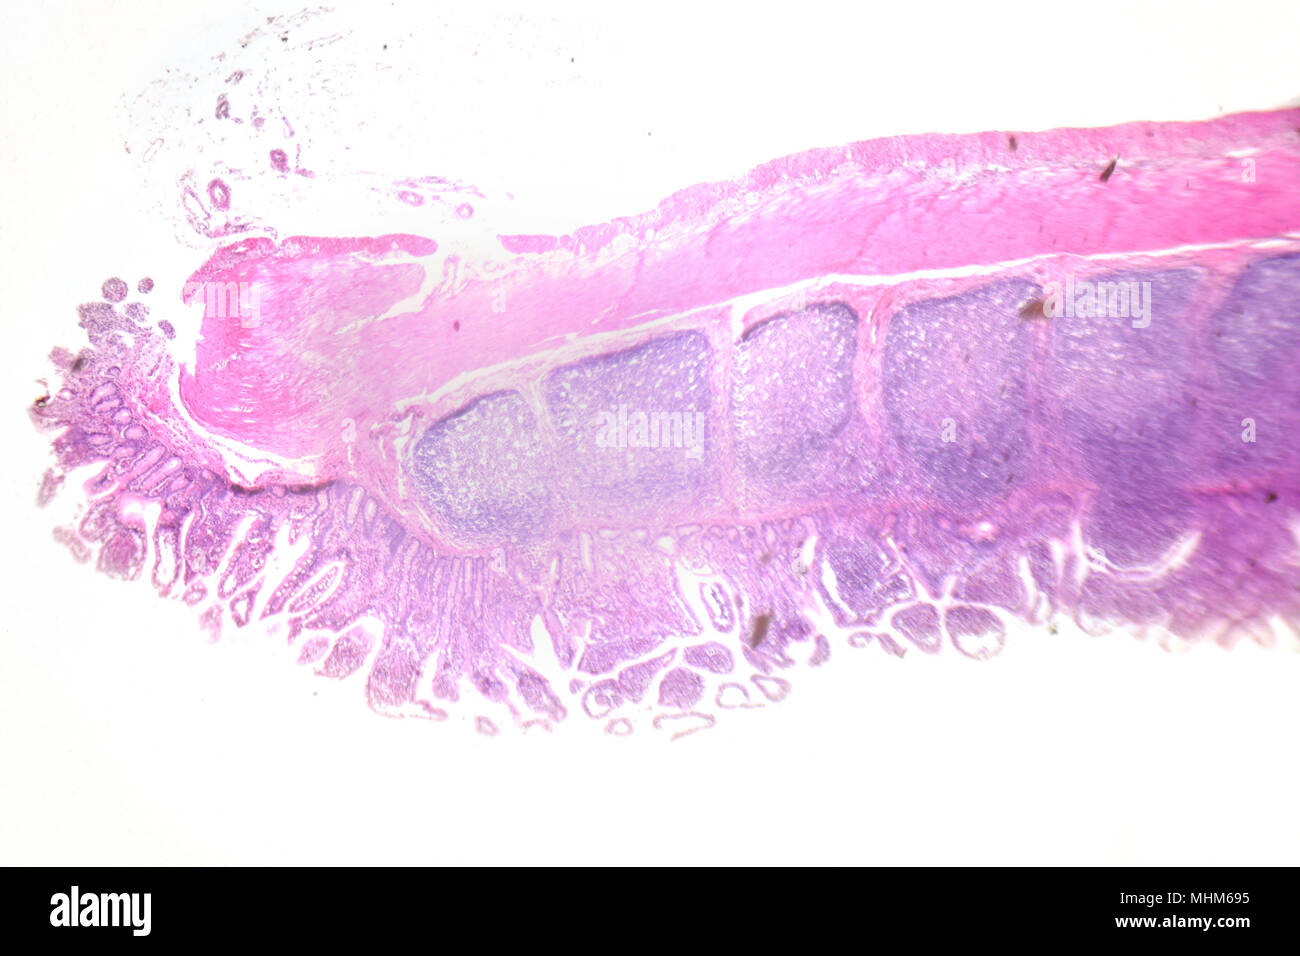 Fotografía de microscopía. Gran intestinales. Sección transversal. Foto de stock